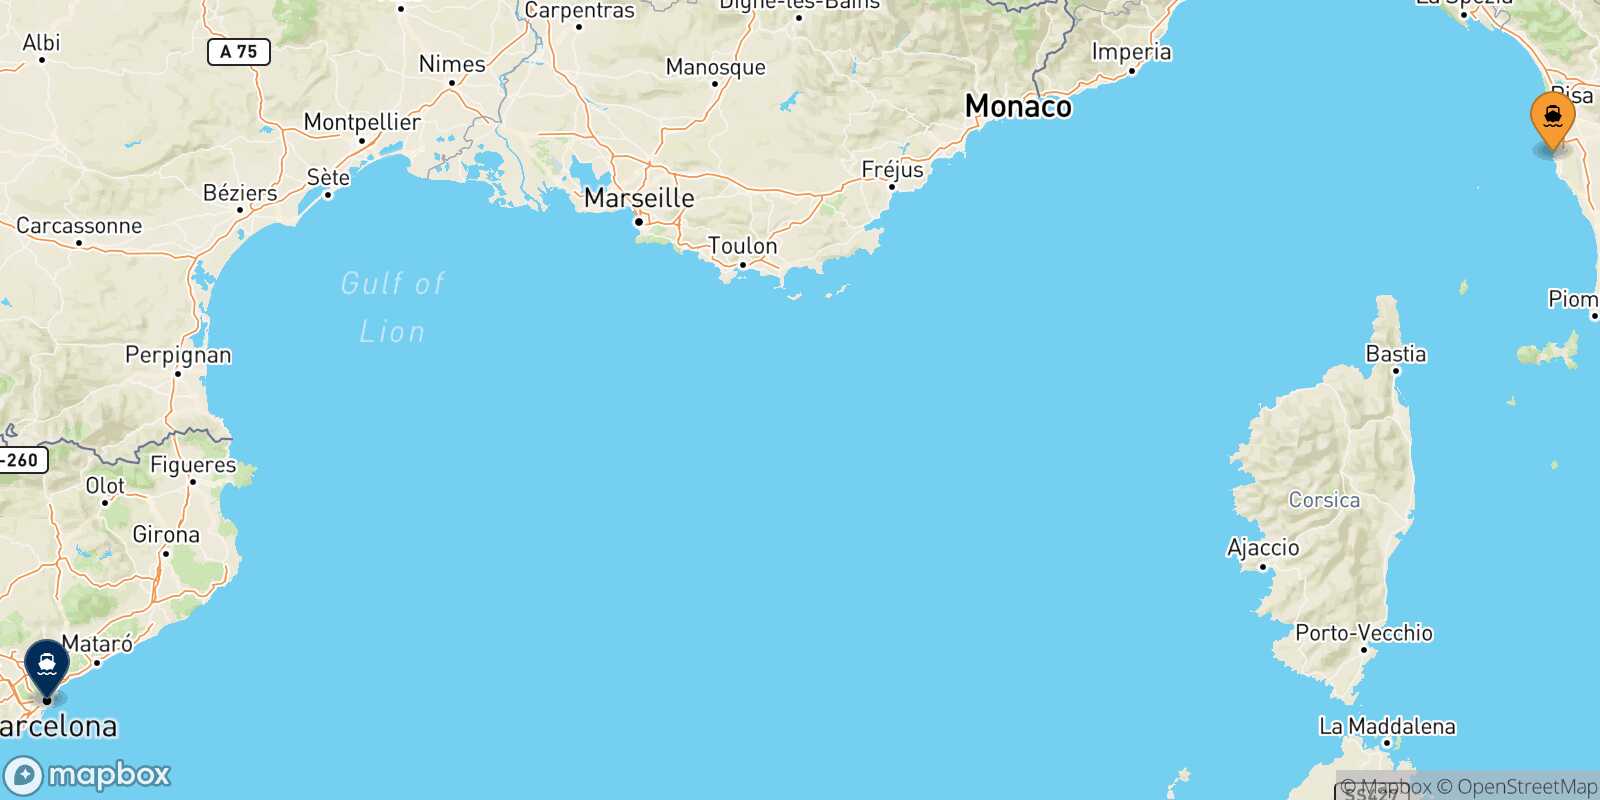 Mappa della rotta Livorno Barcellona